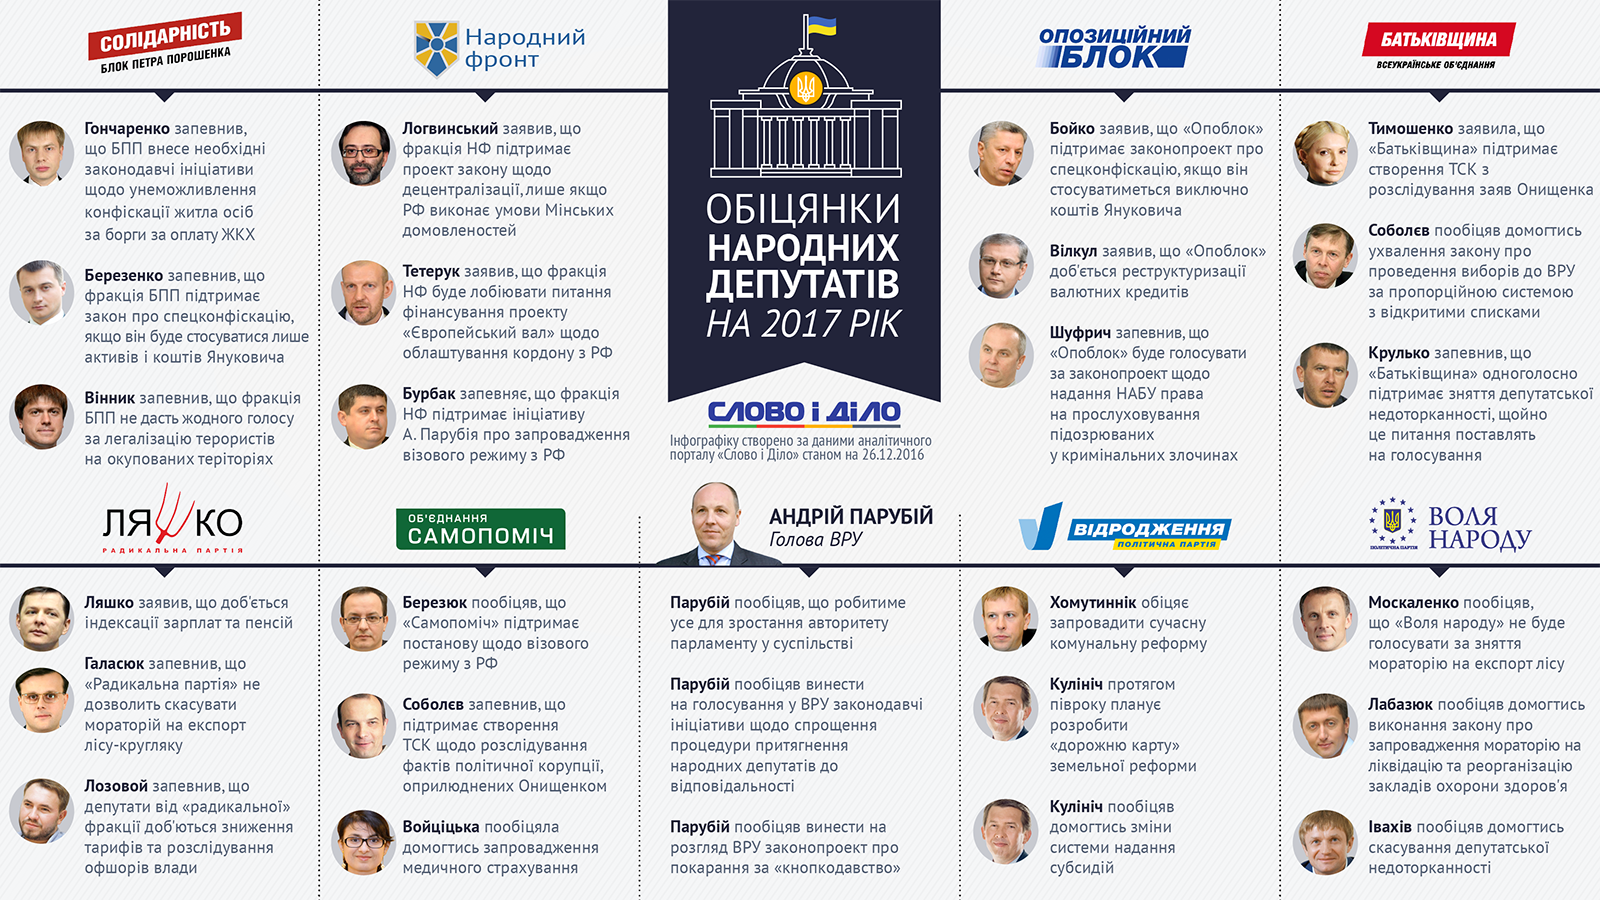 Что народные депутаты обещают украинцам на следующий год?